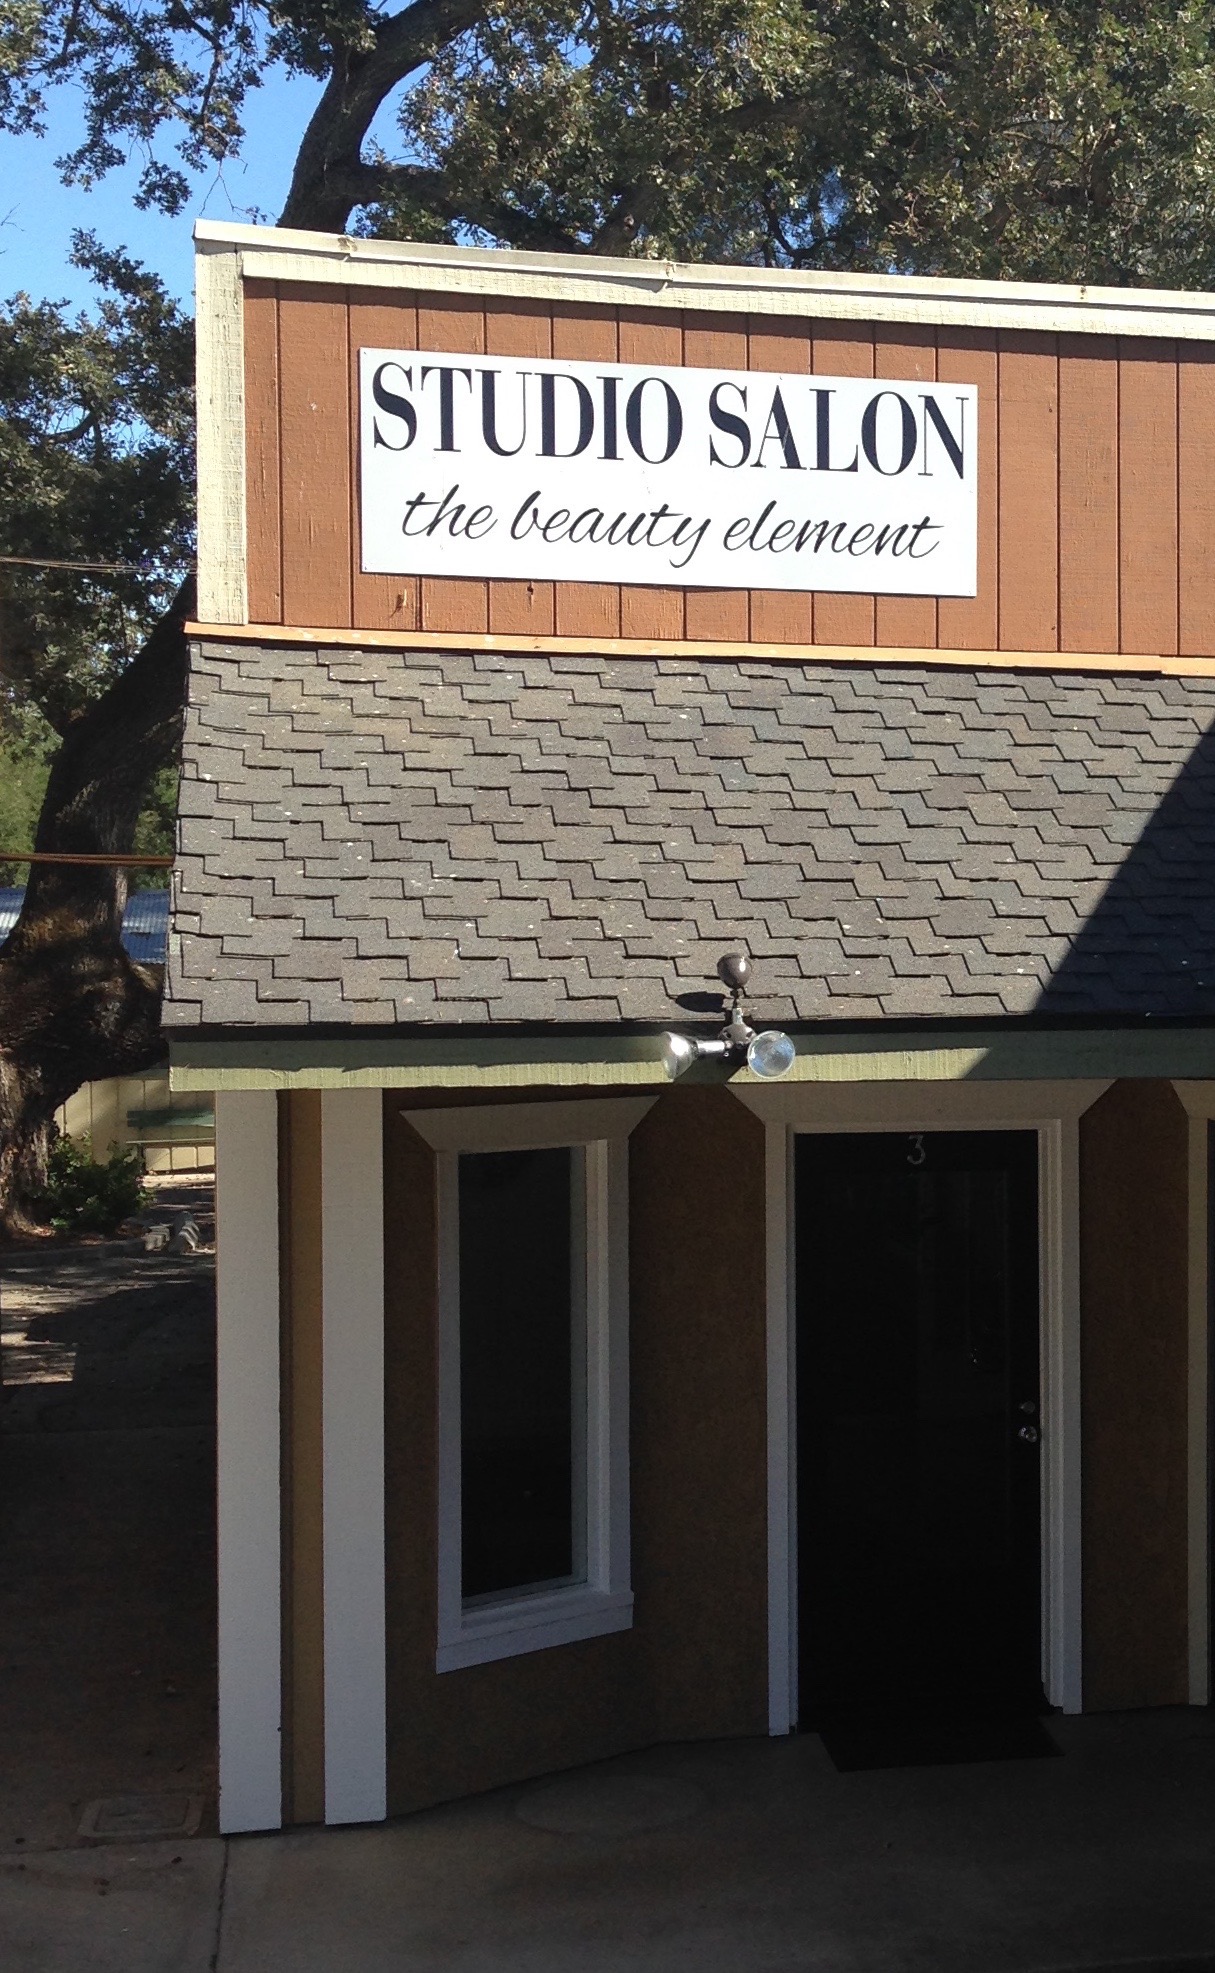 Studio Salon the beauty element 105 S Main St Suite 3, Templeton California 93465